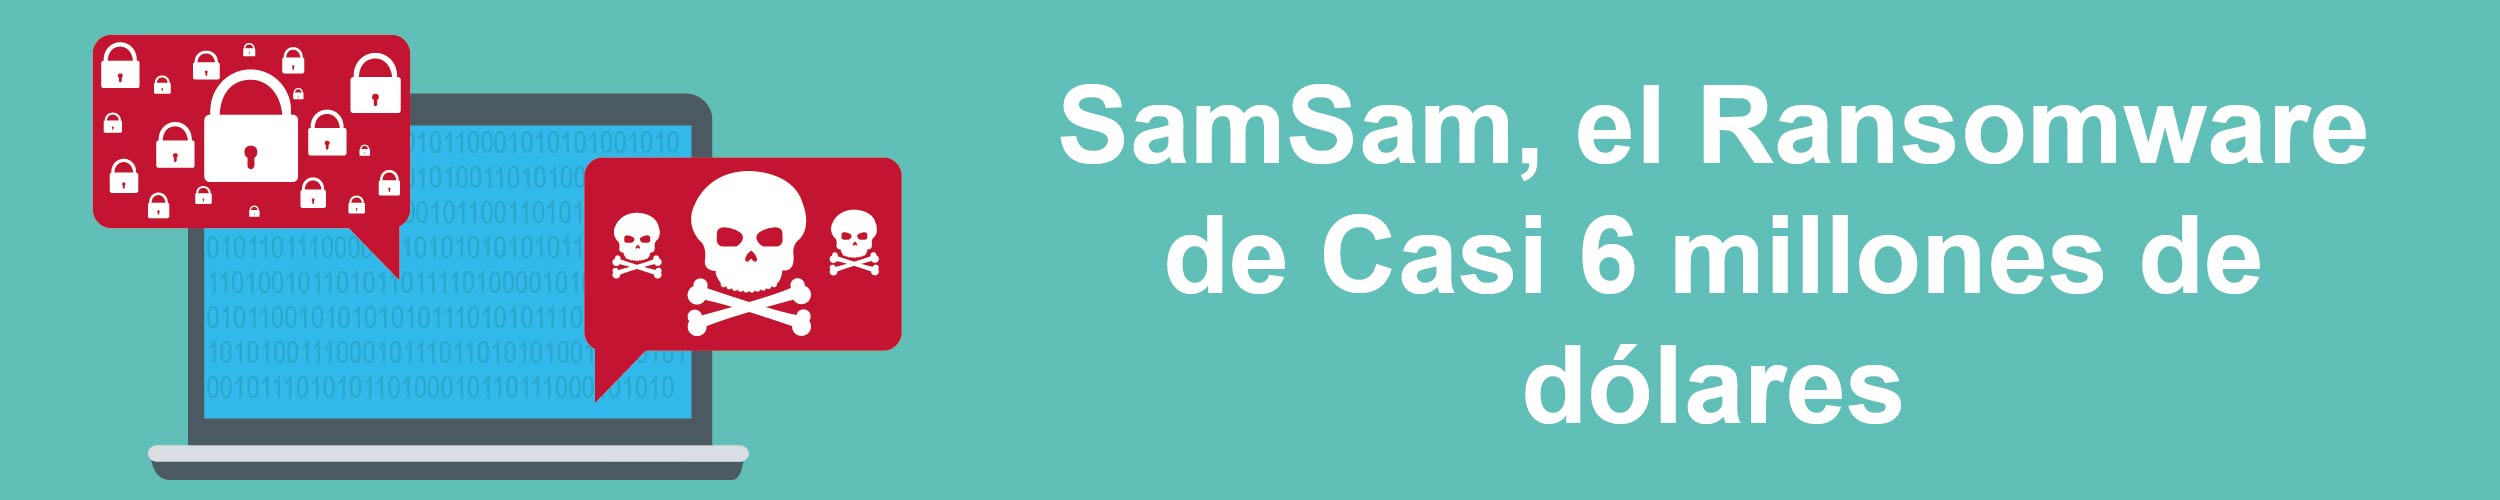 SamSam, el Rasnomware de casi 6 millones de dólares